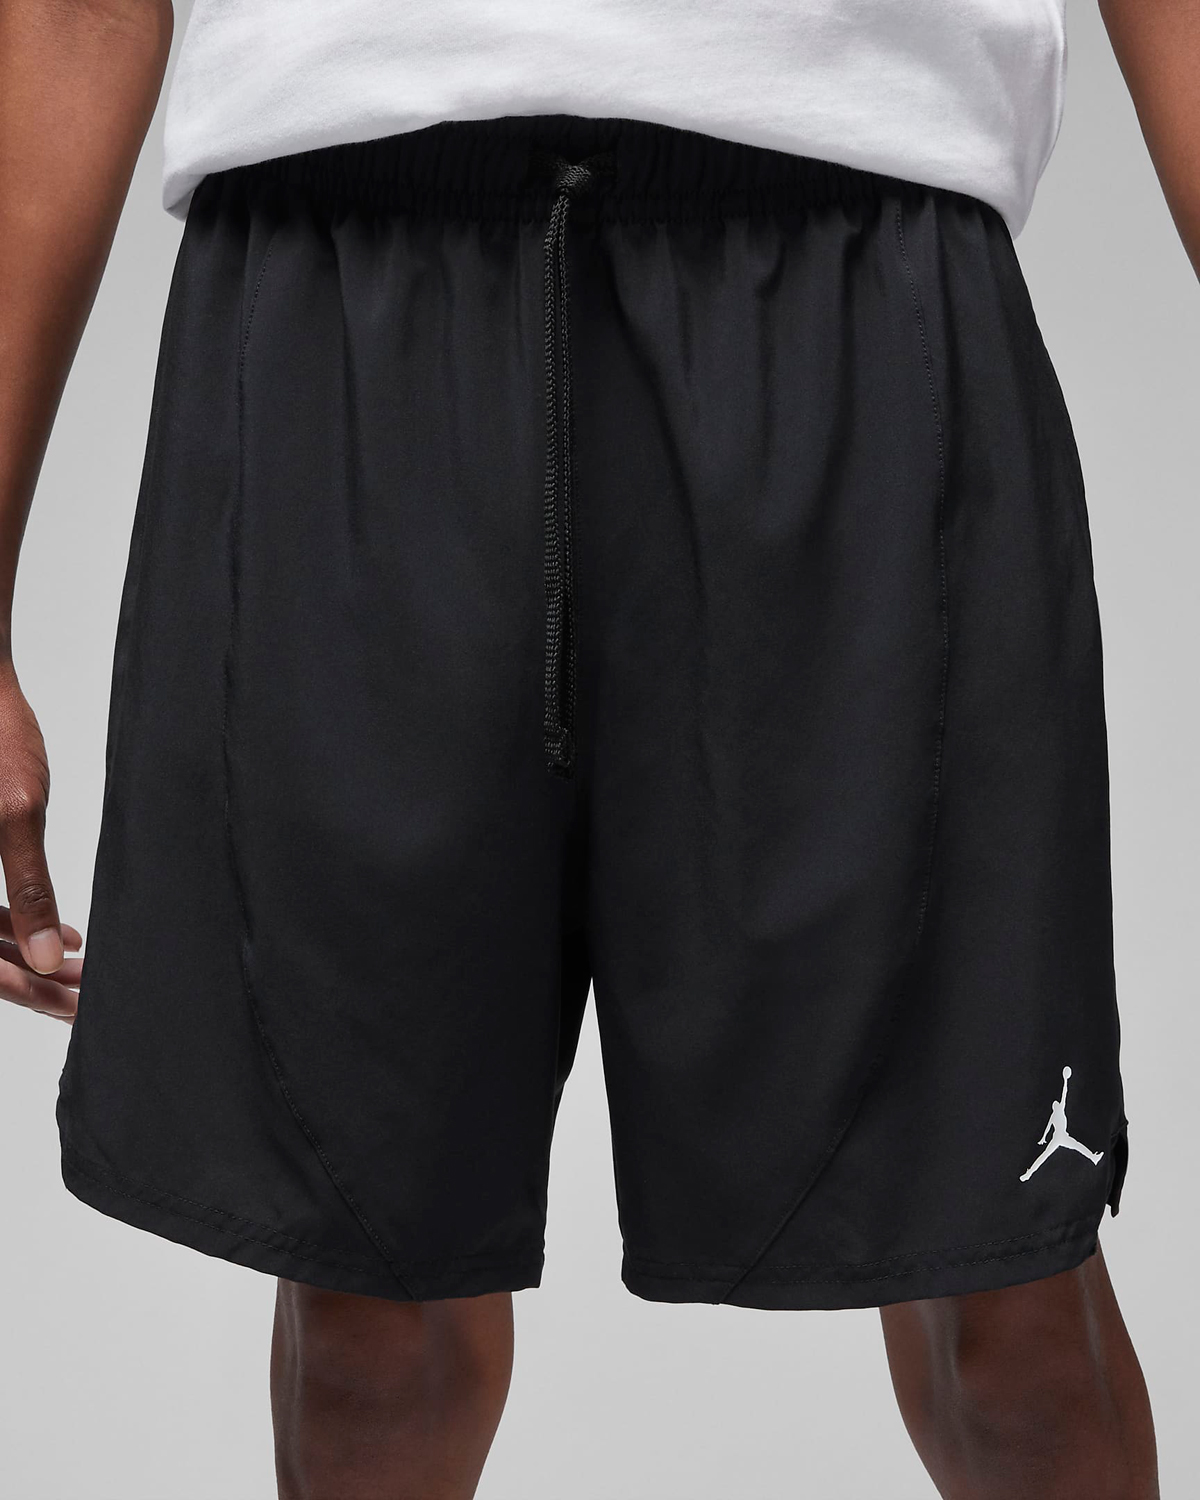 Jordan-Dri-Fit-Sport-Shorts-Black-White